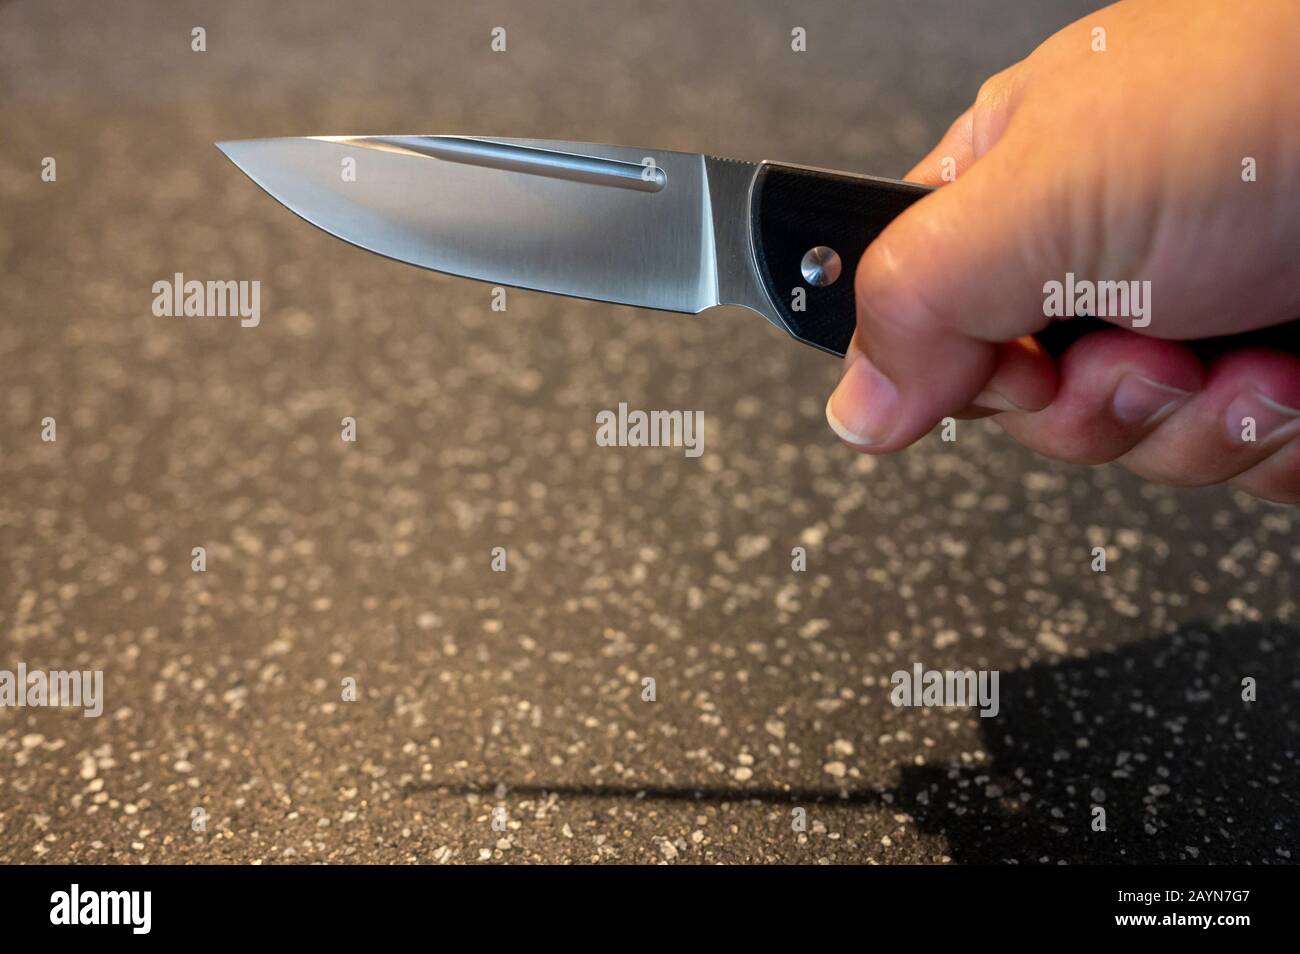 Symbole, Symbolbild, Eine Faust haelt ein Messer in der Hand. Stock Photo